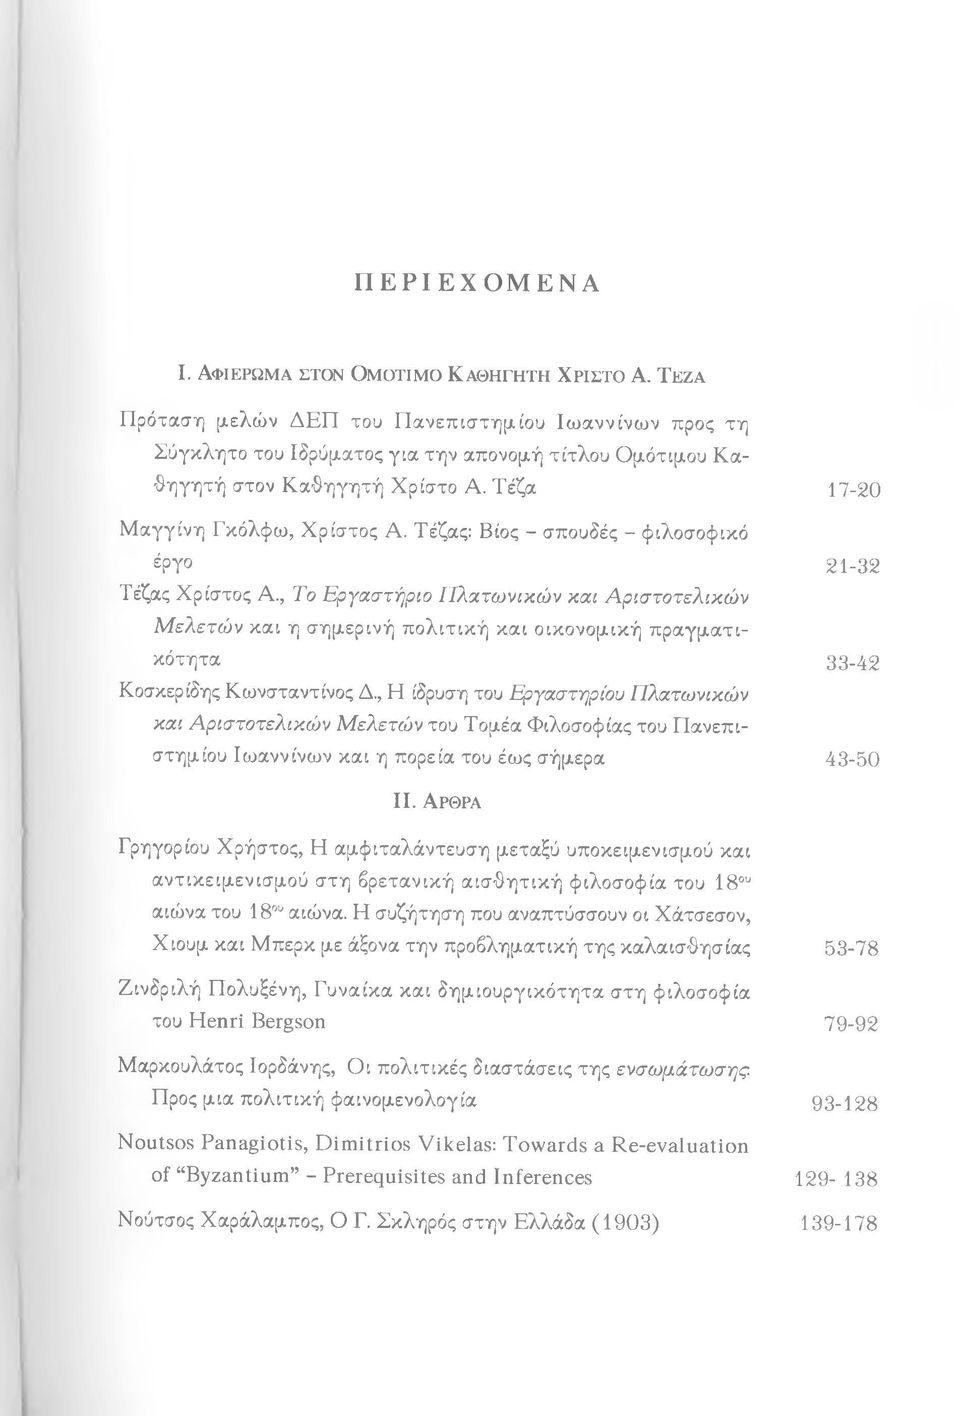 Τέζας: Βίος - σπουδές - φιλοσοφικό έργο Τέζας Χρίστος Α., Το Εργαστήριο Πλατωνικών και Αριστοτελικών Μ ελετών και η σημερινή πολιτική και οικονομική πραγματικότητα Κοσκερίδης Κωνσταντίνος Δ.